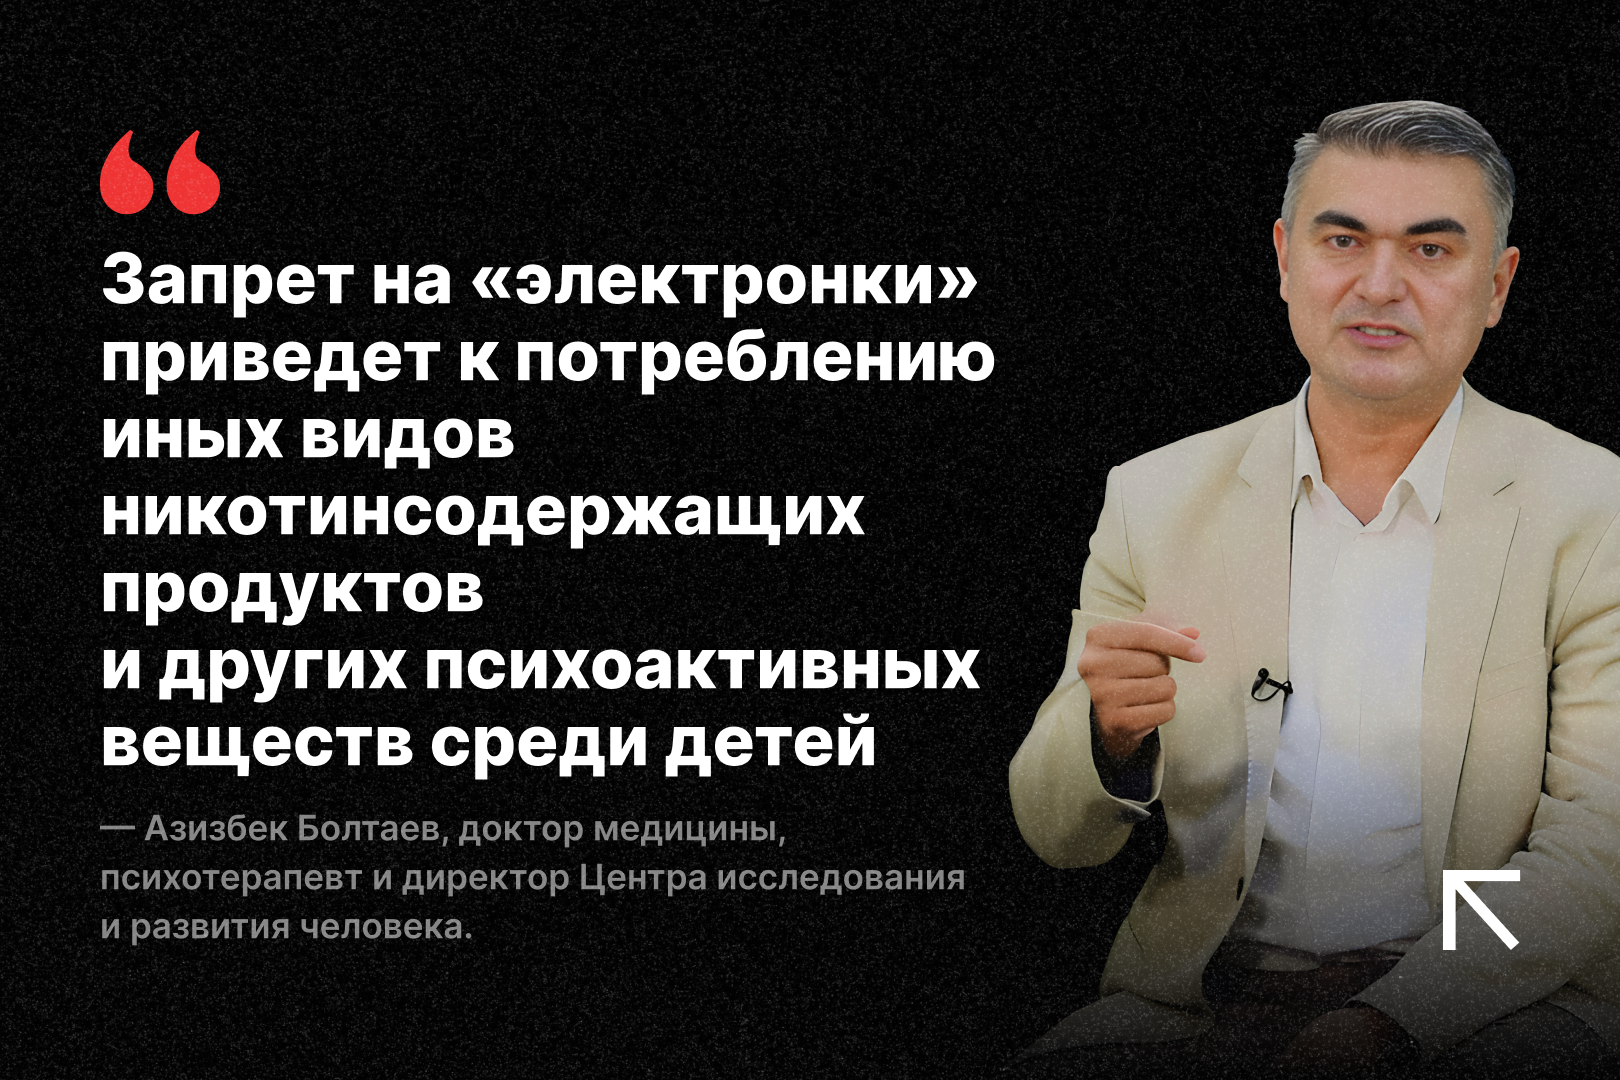 Доктор Азизбек Болтаев высказался по поводу законопроекта о запрете вейпов и никотиновых пэков